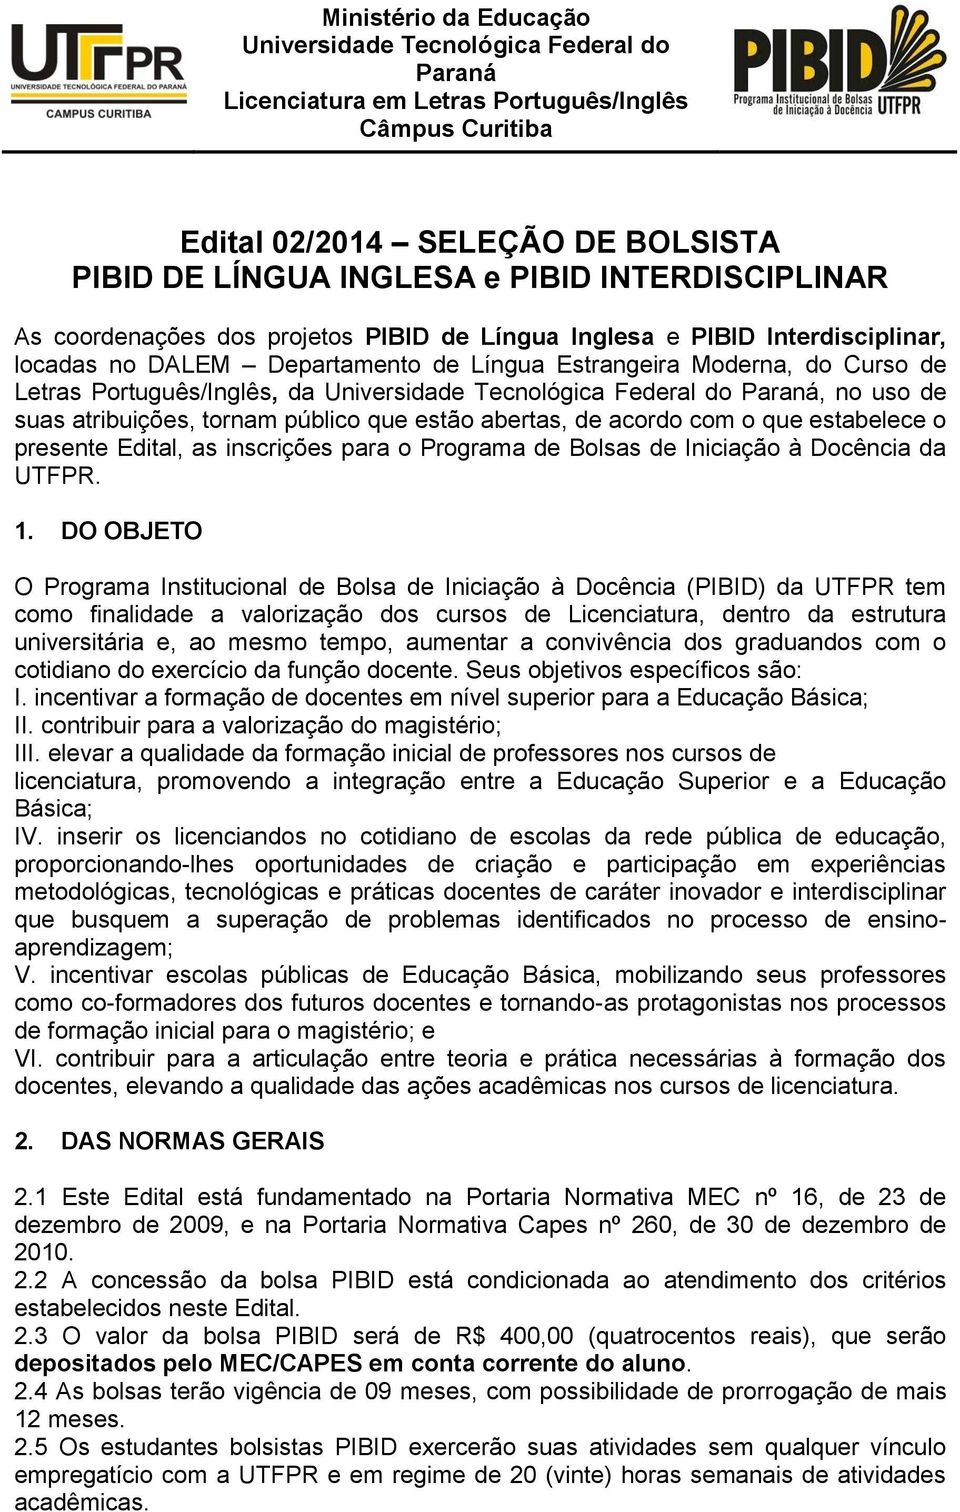 Universidade Tecnológica Federal do Paraná, no uso de suas atribuições, tornam público que estão abertas, de acordo com o que estabelece o presente Edital, as inscrições para o Programa de Bolsas de